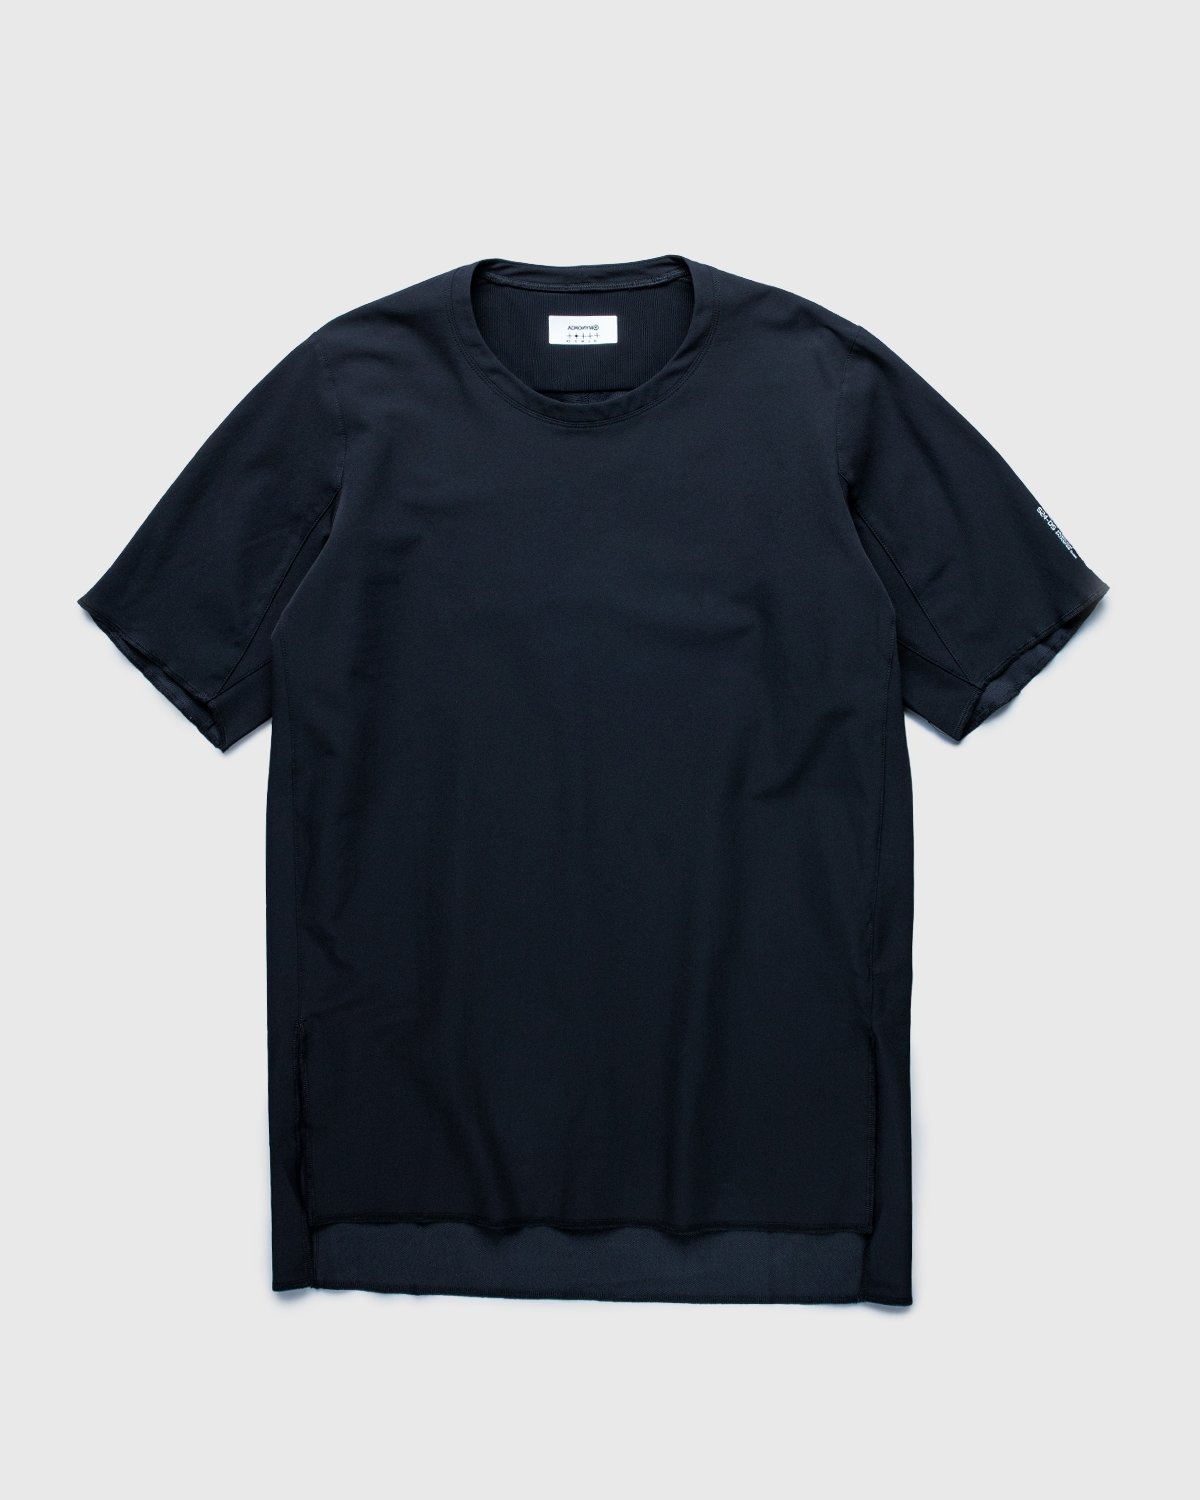 ACRONYM – S24-DS Short Sleeve Black - T-Shirts - Black - Image 1